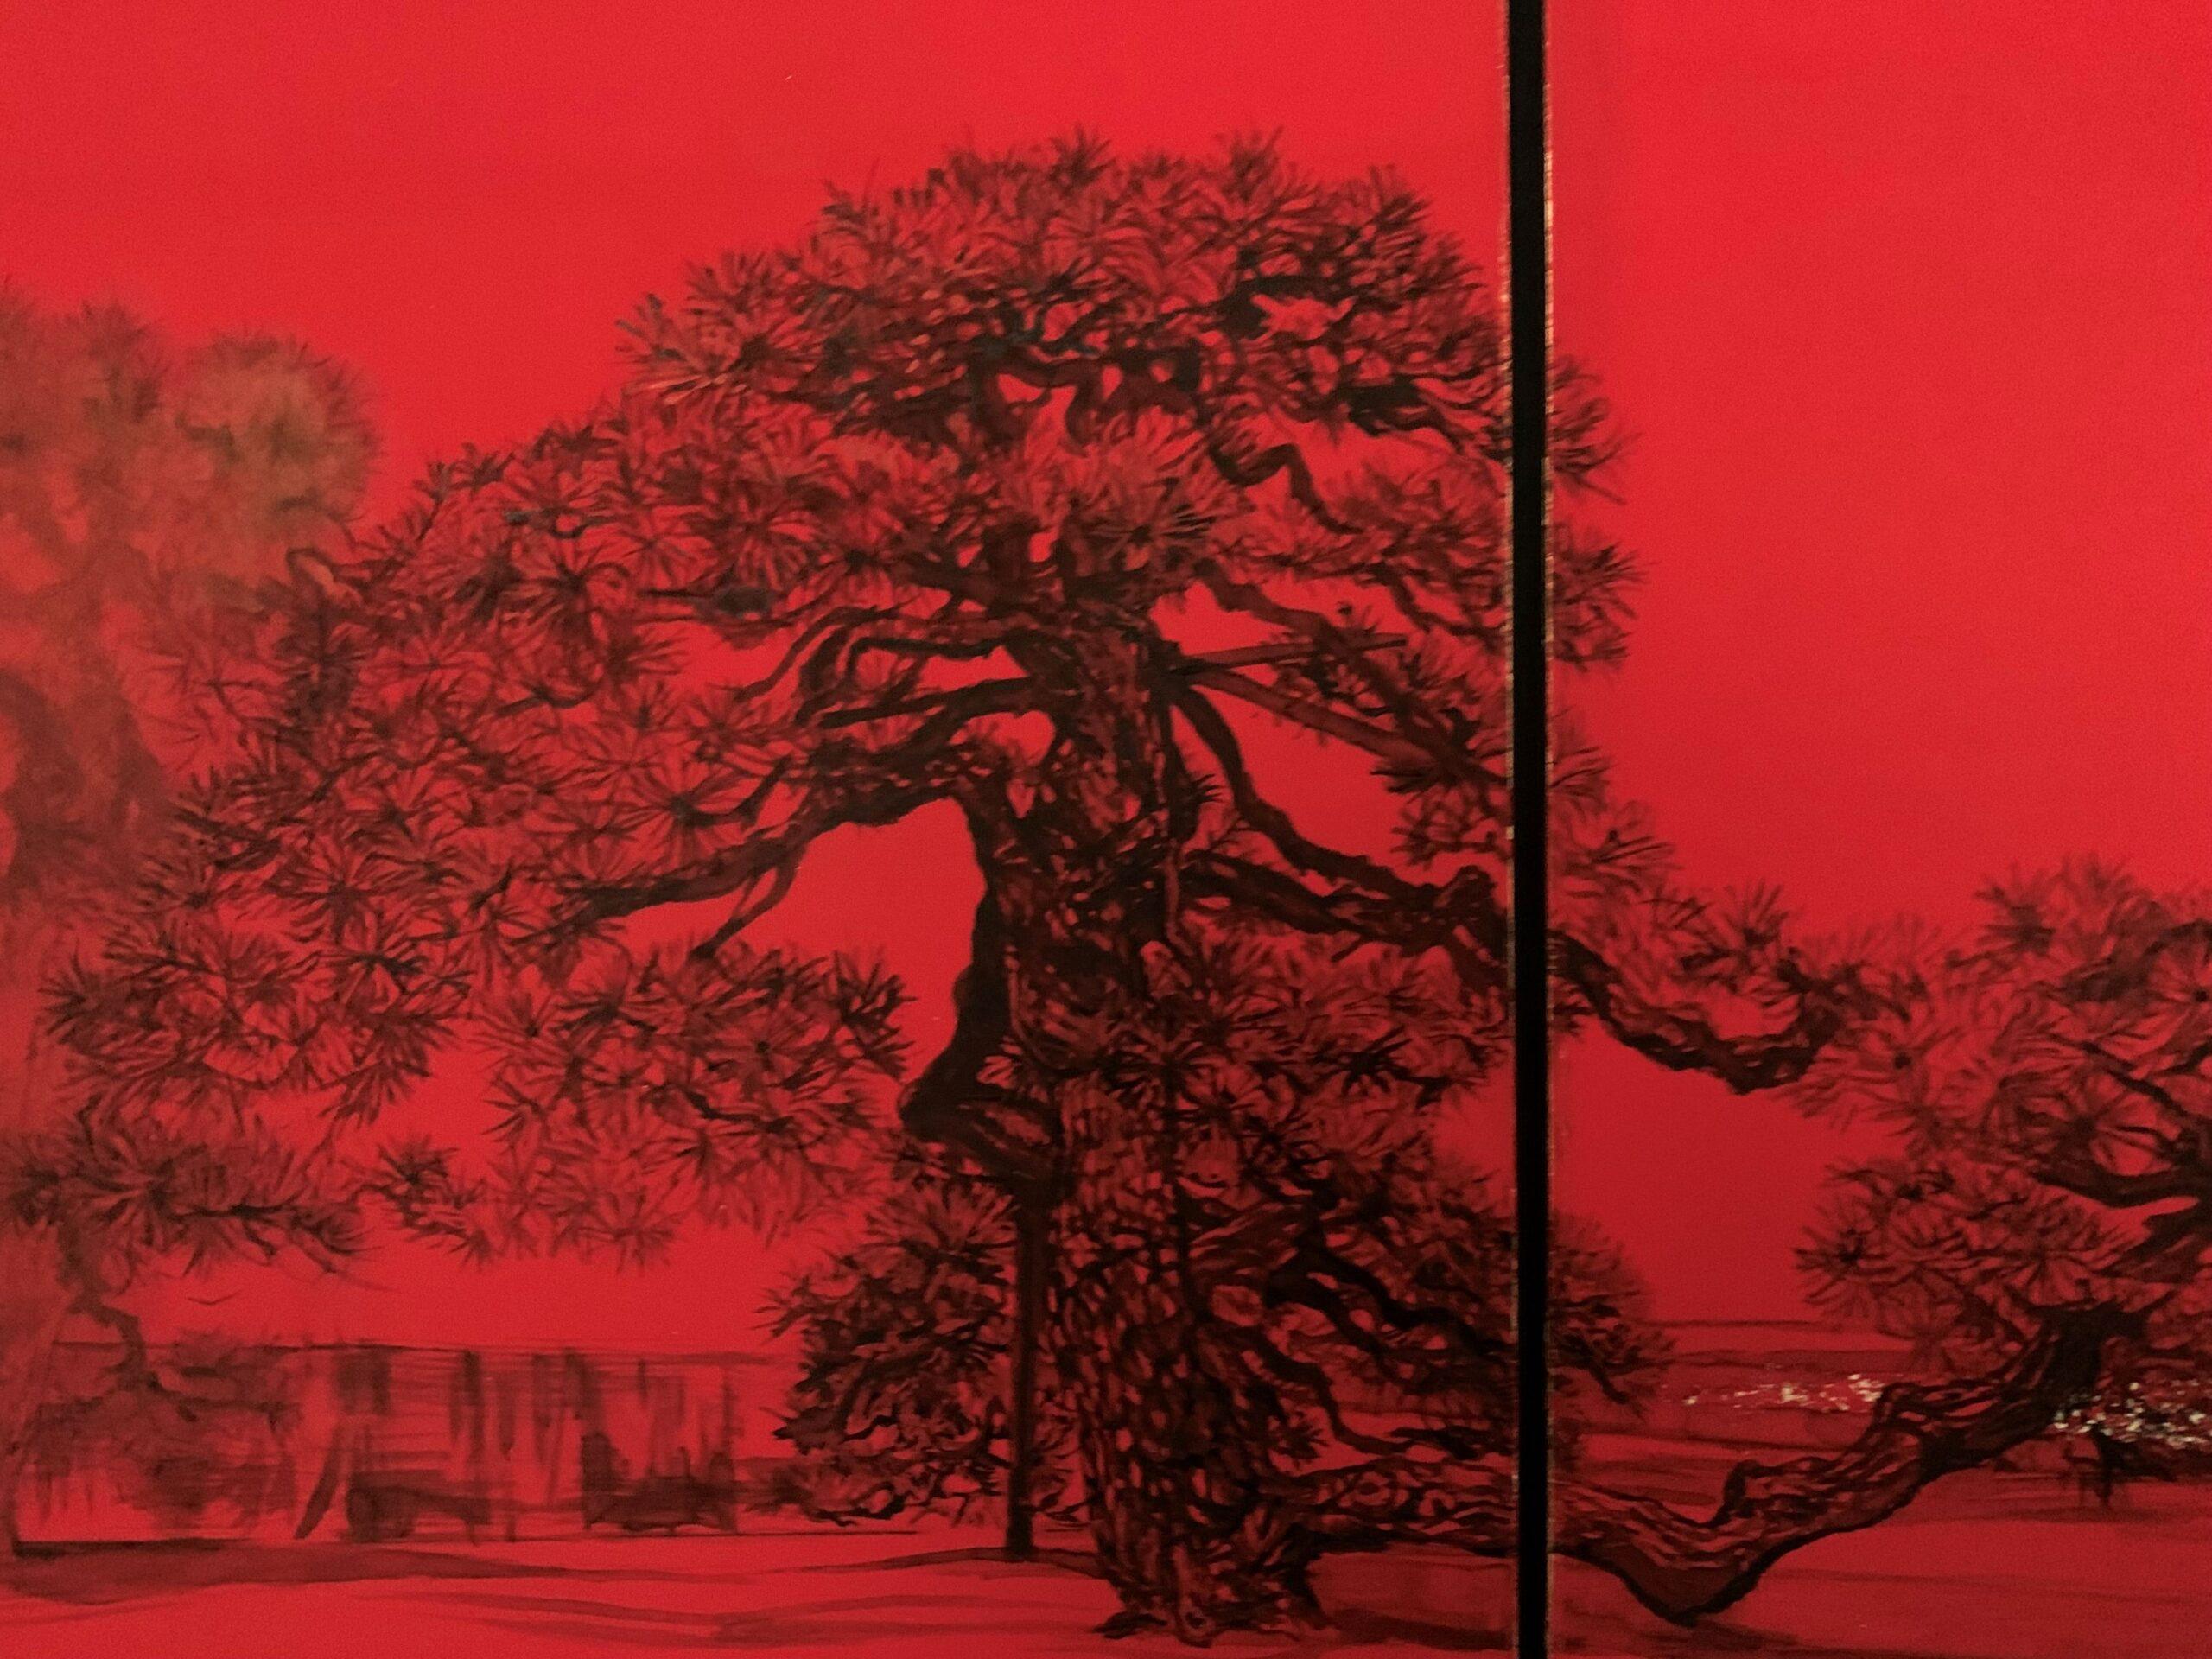 Paesaggio urbano III di Lumi Mizutani - pittura giapponese, rosso intenso, alberi in vendita 3